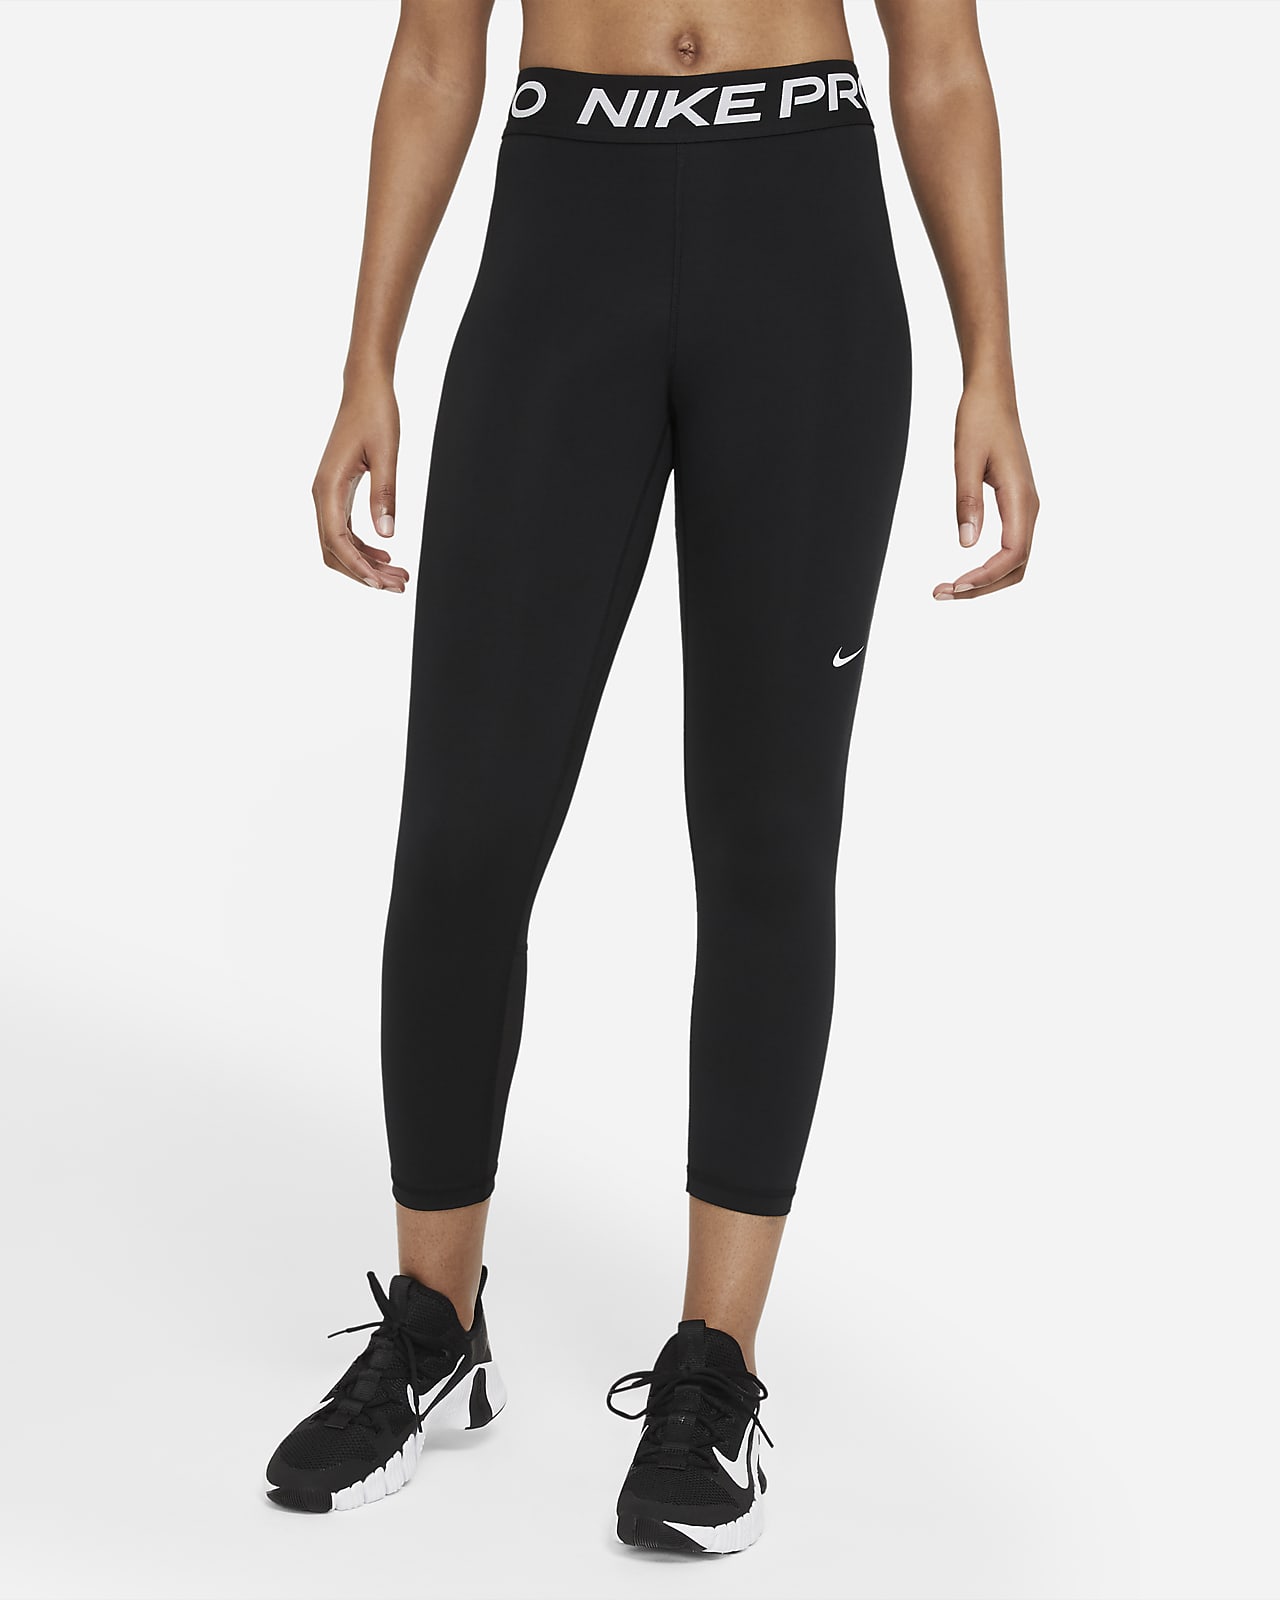 Nike Pro 365 verkürzte Leggings mit mittelhohem Bund und Mesh-Einsatz für Damen